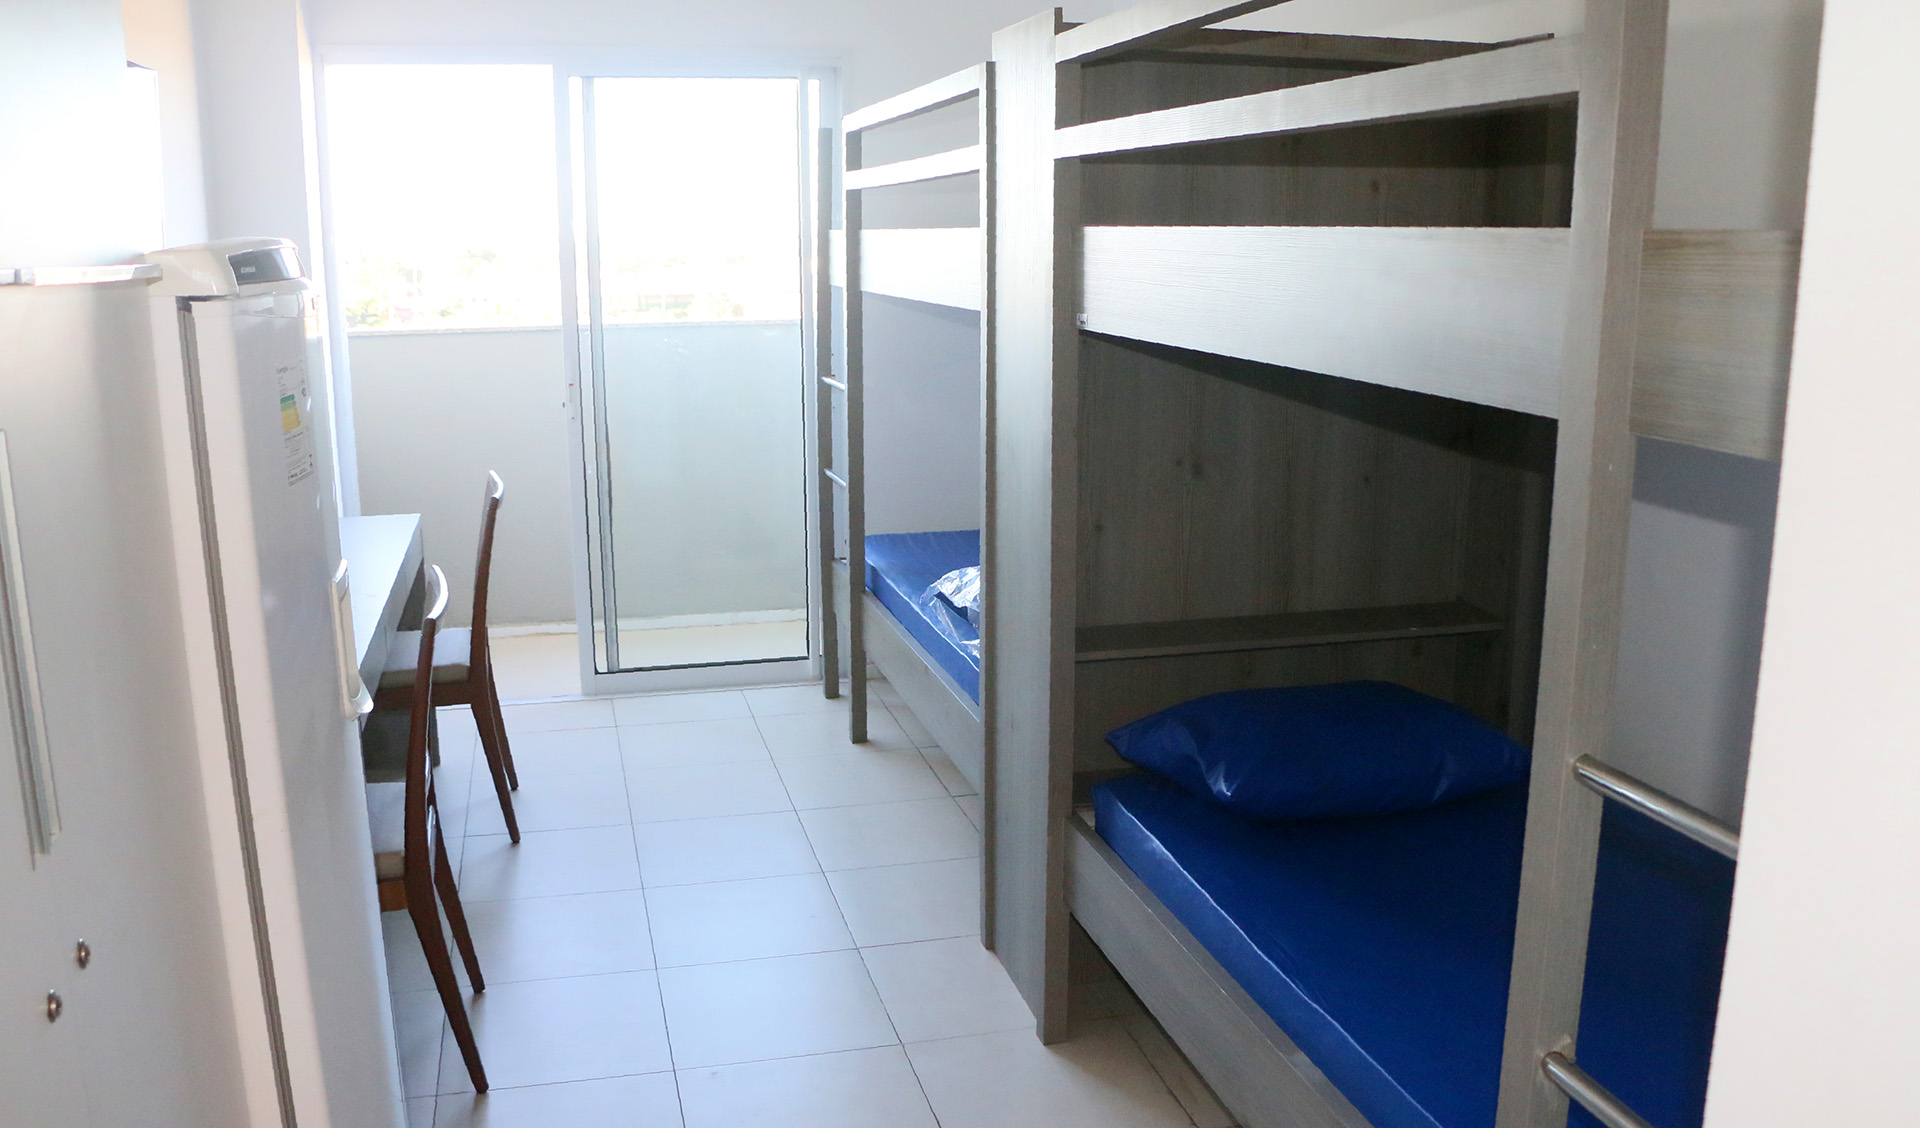 interior de um quarto, mostrando duas camas do tipo beliche, uma geladeira e uma porta que dá para uma varanda